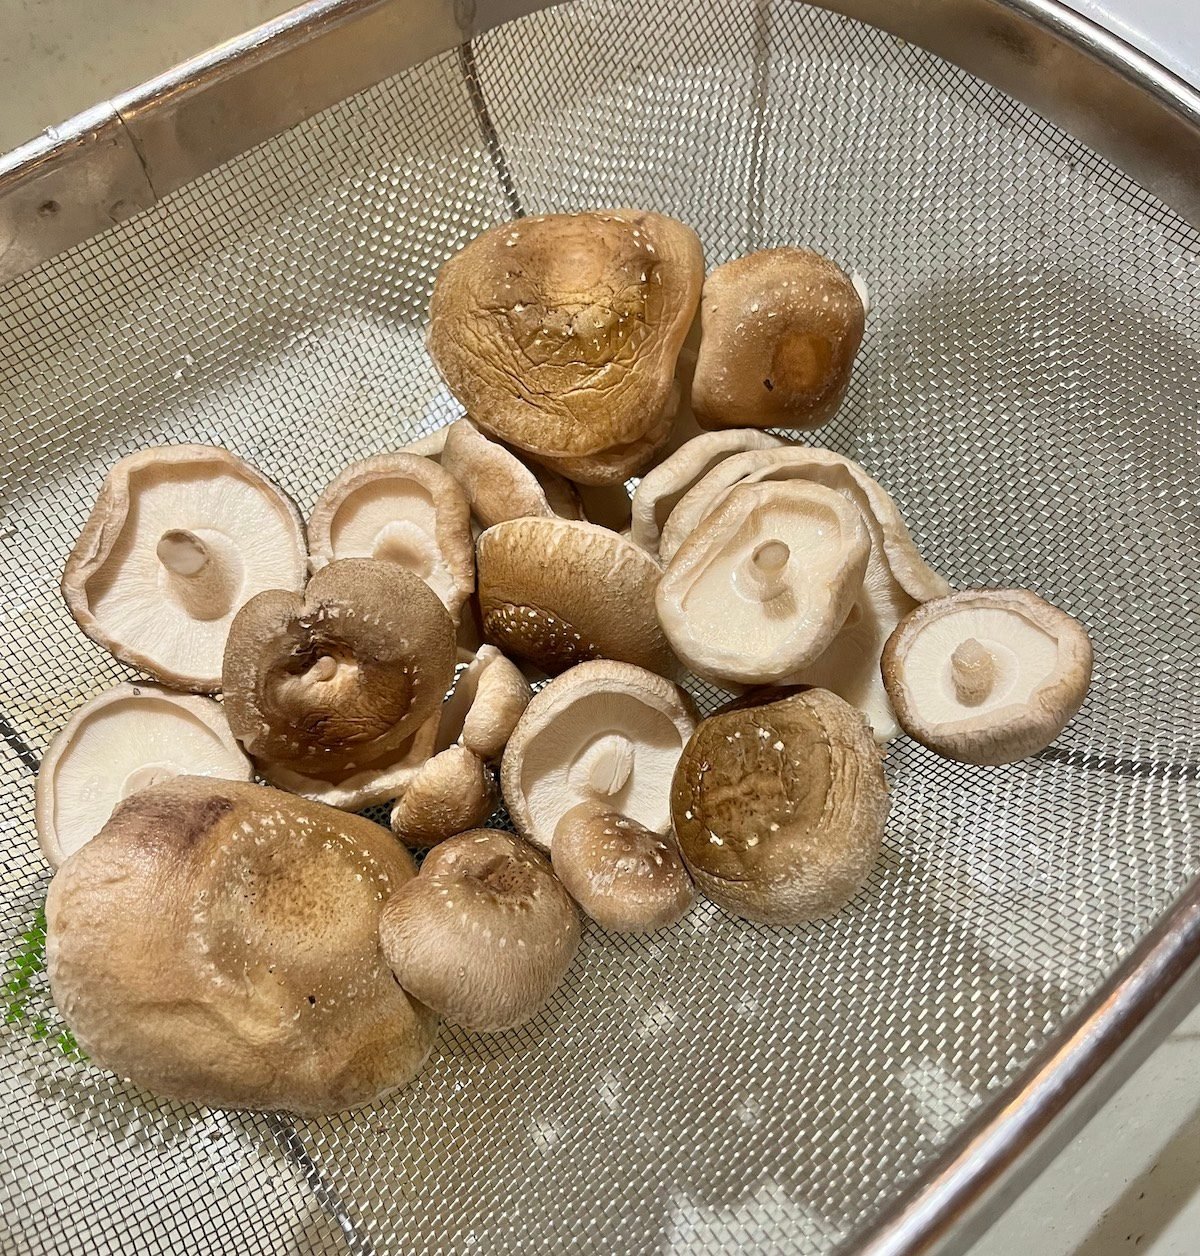 Mushroom Log Starter Kit